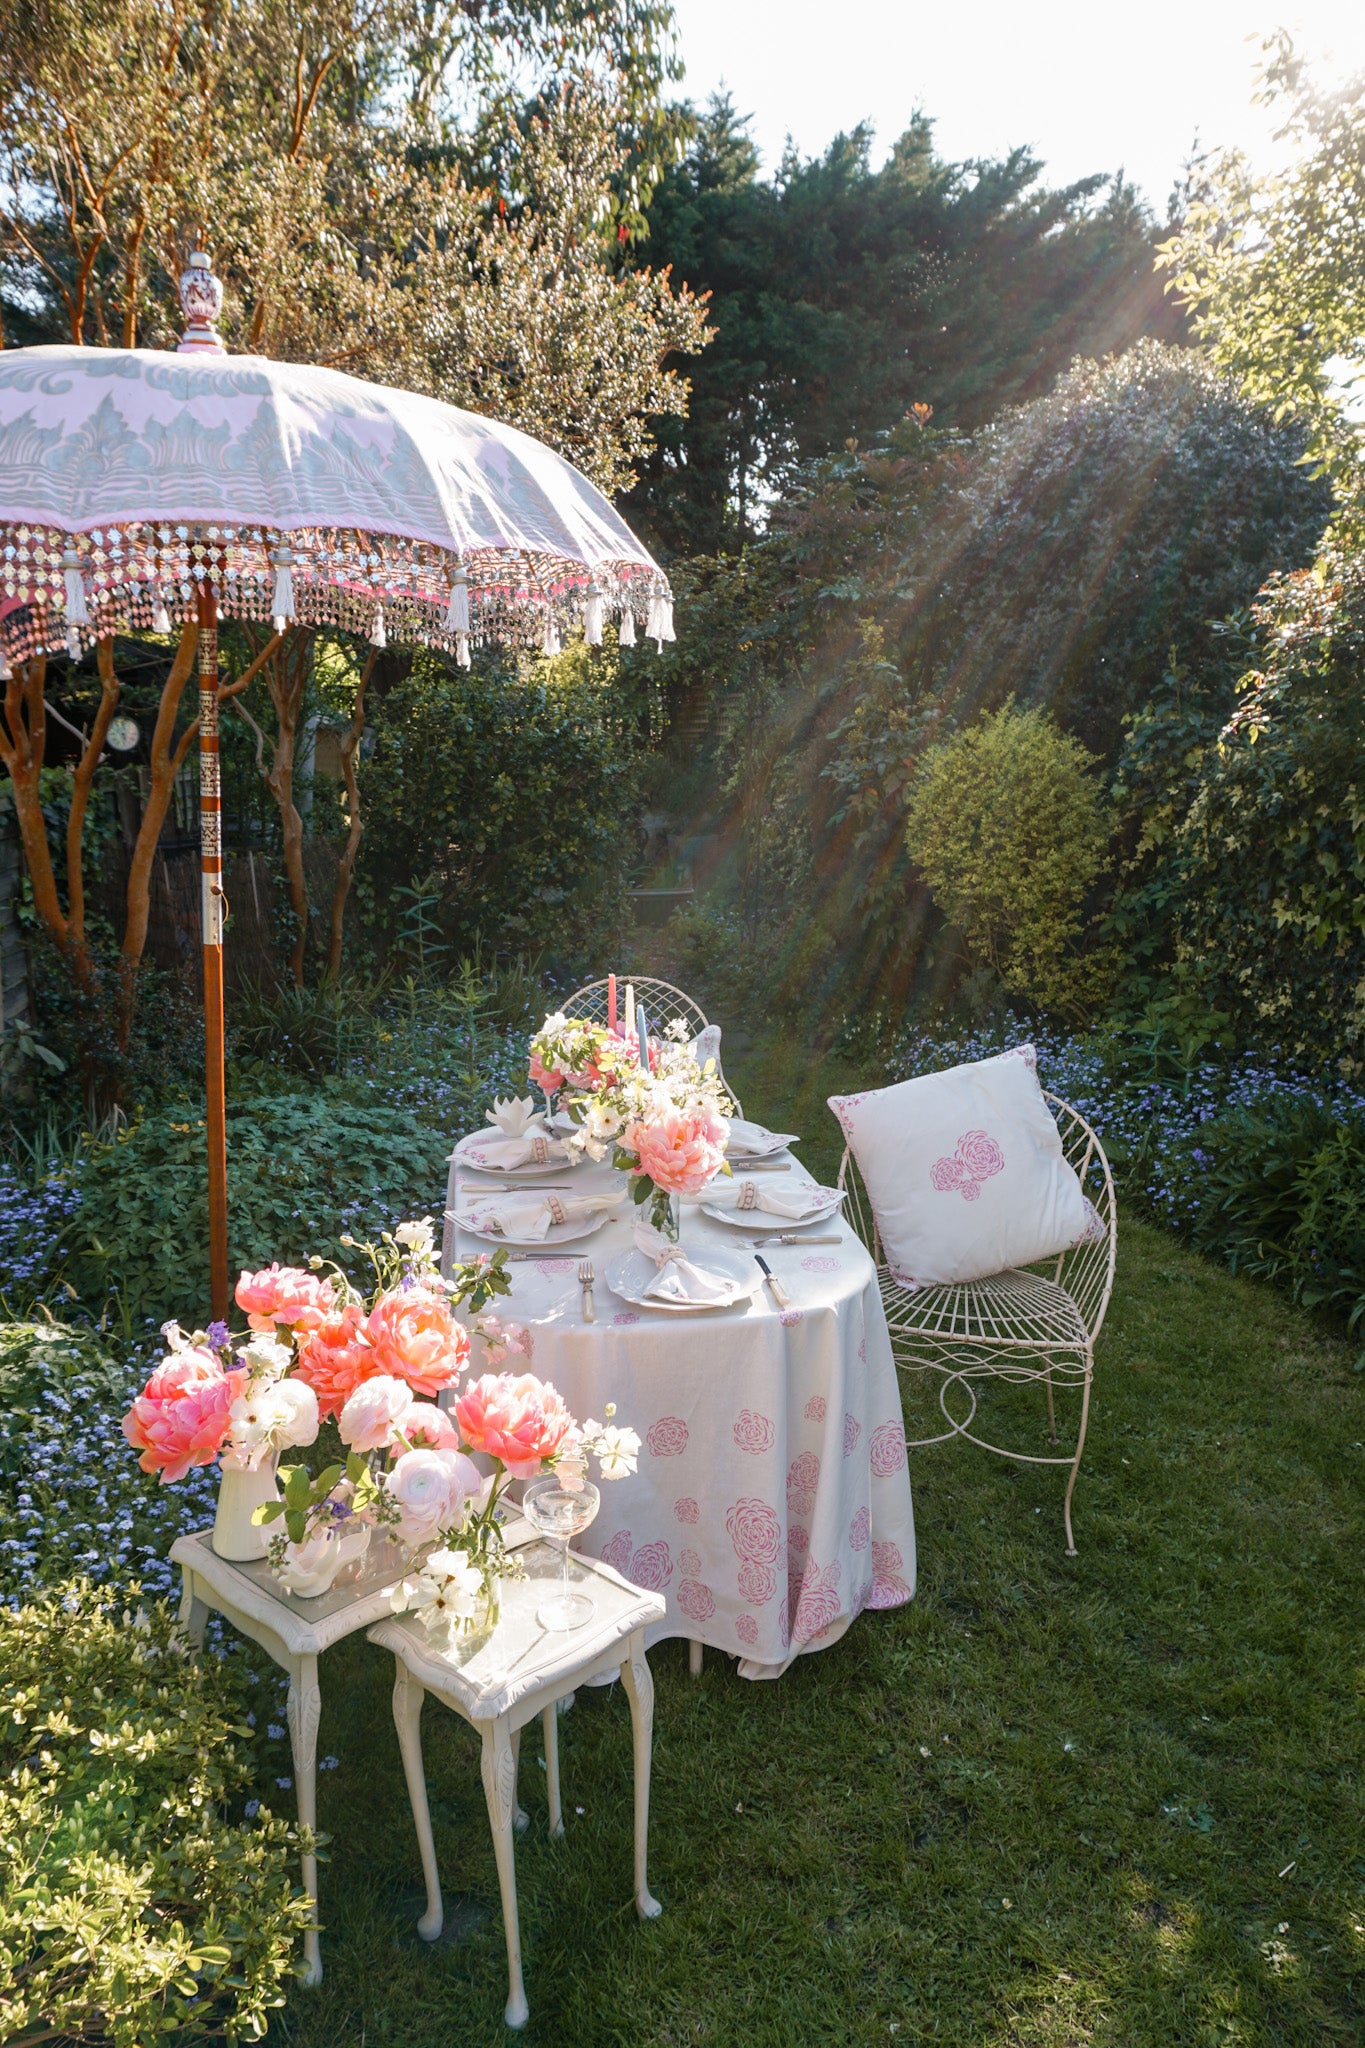 Garden tea party in England for The Coronation by Rosanna Falconer